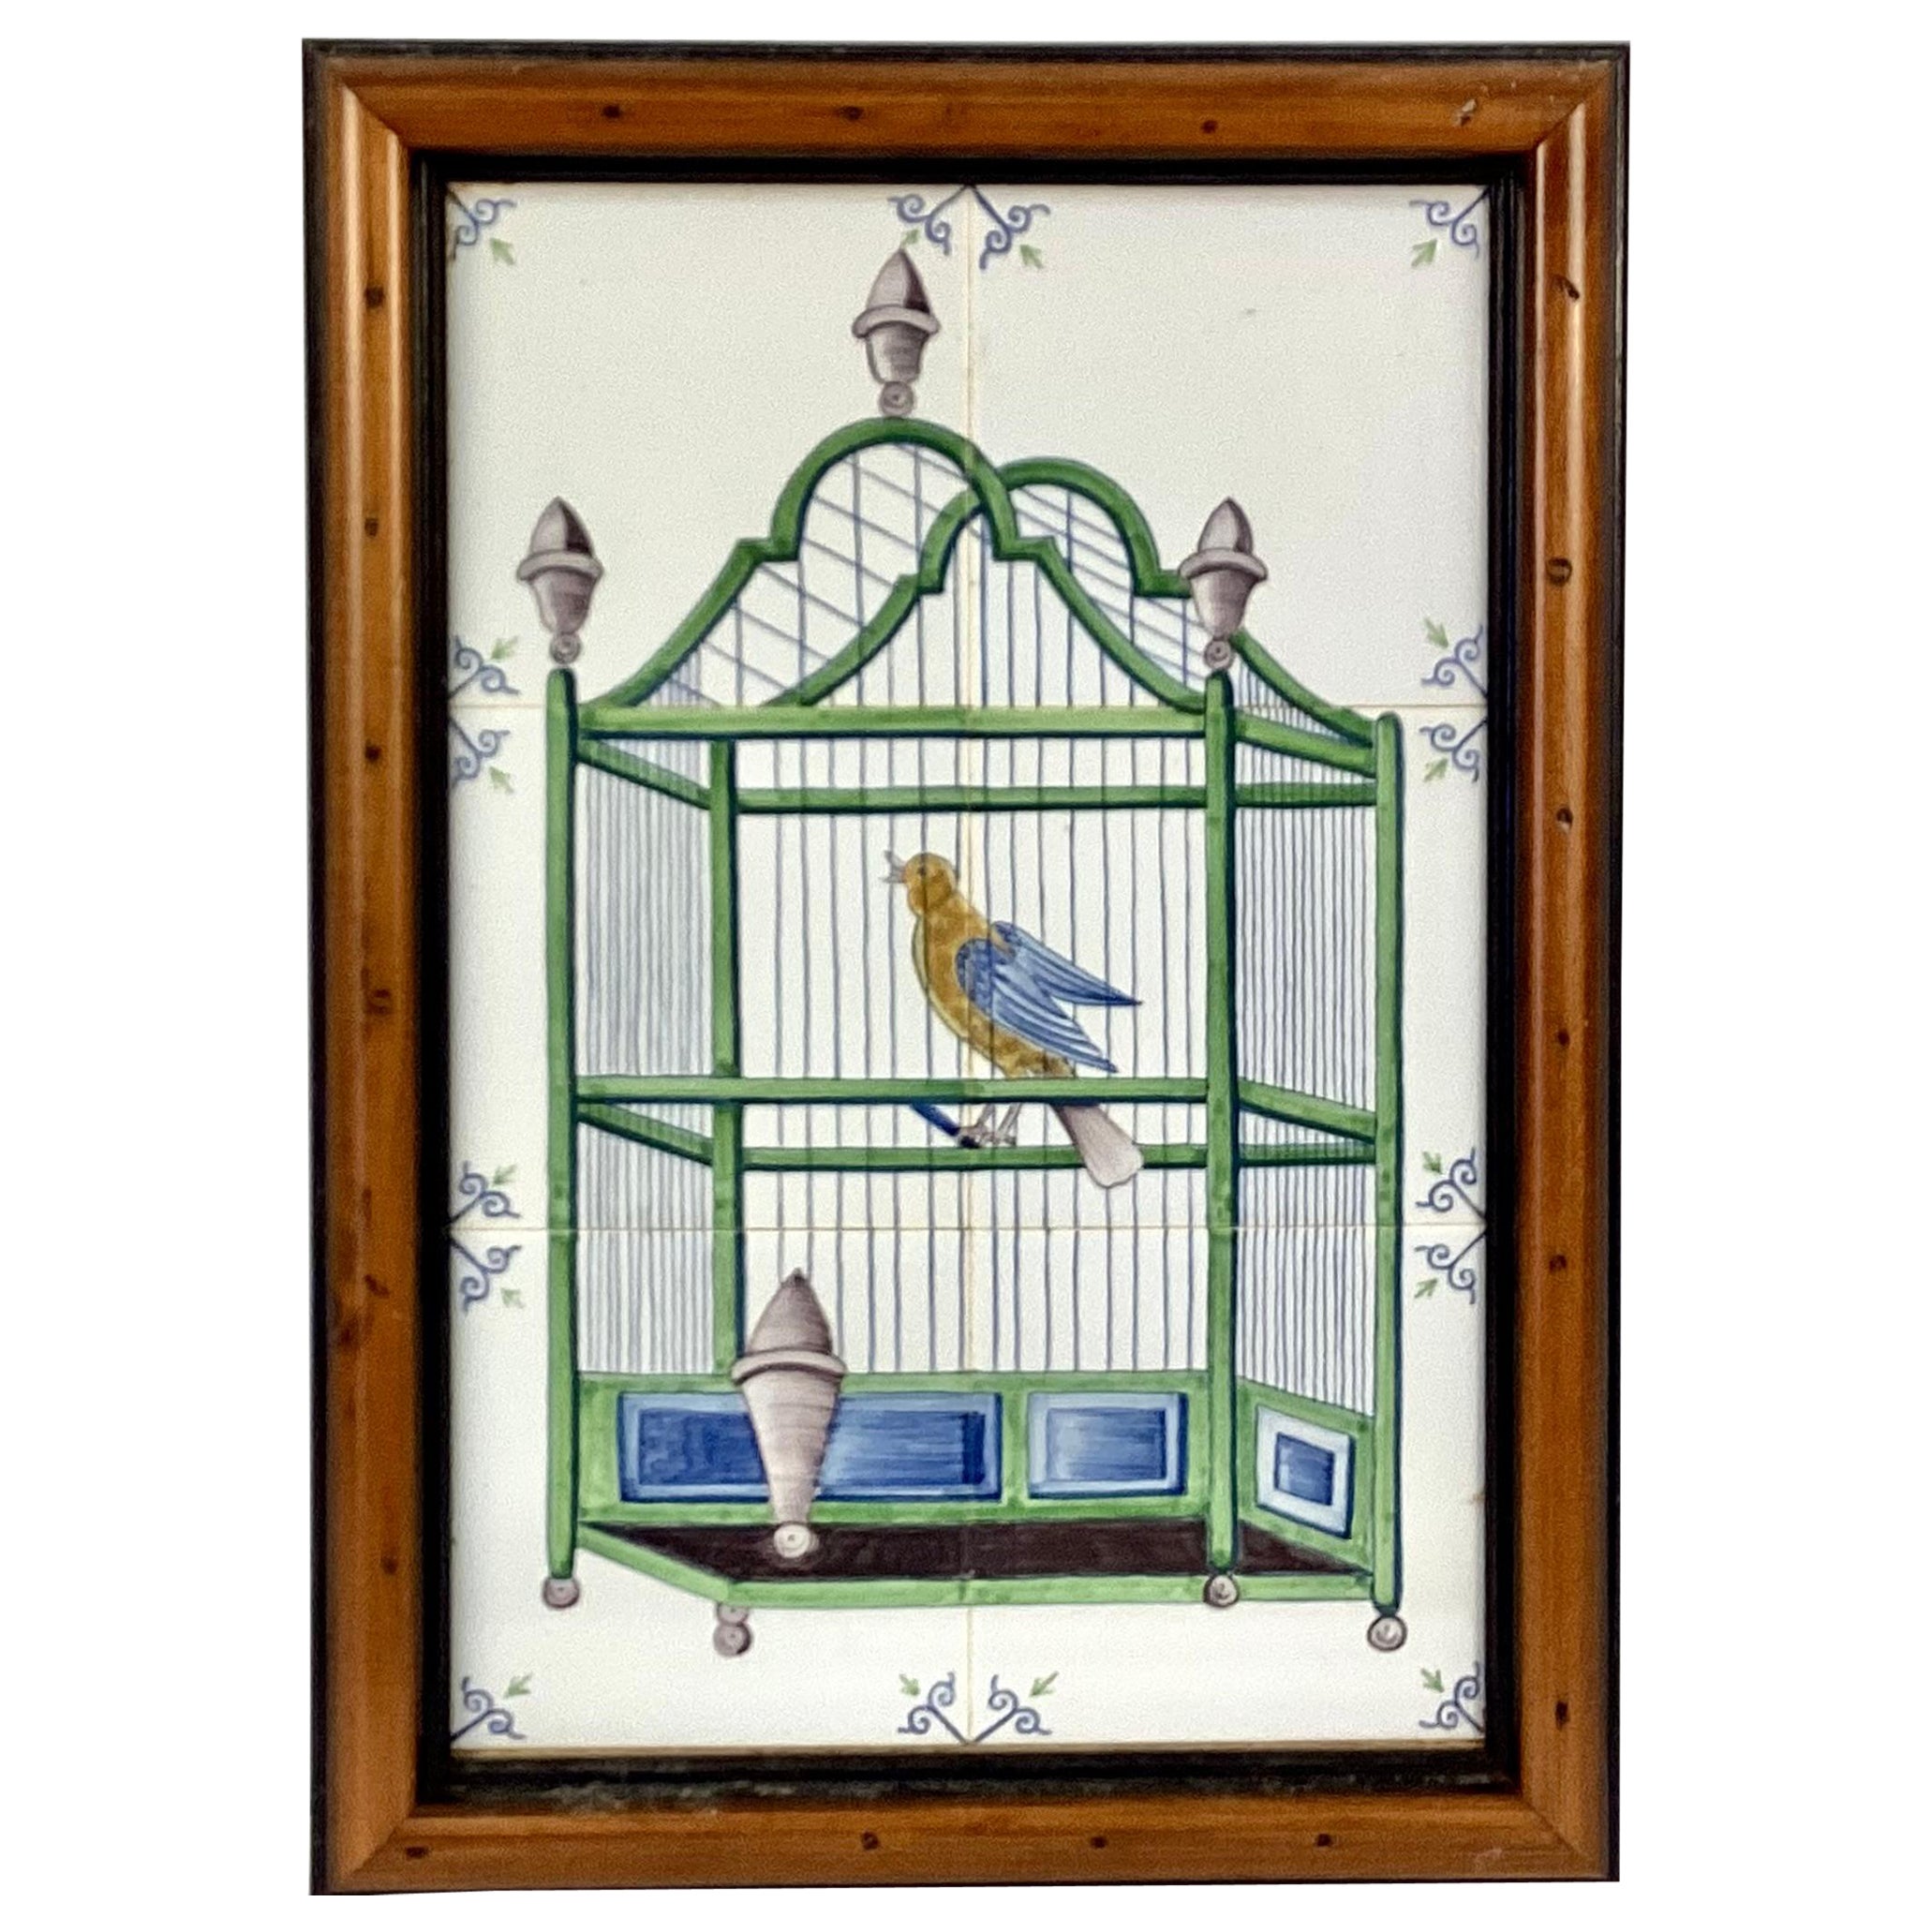 Oiseau de Delft dans une cage, carrelage mural, encadré